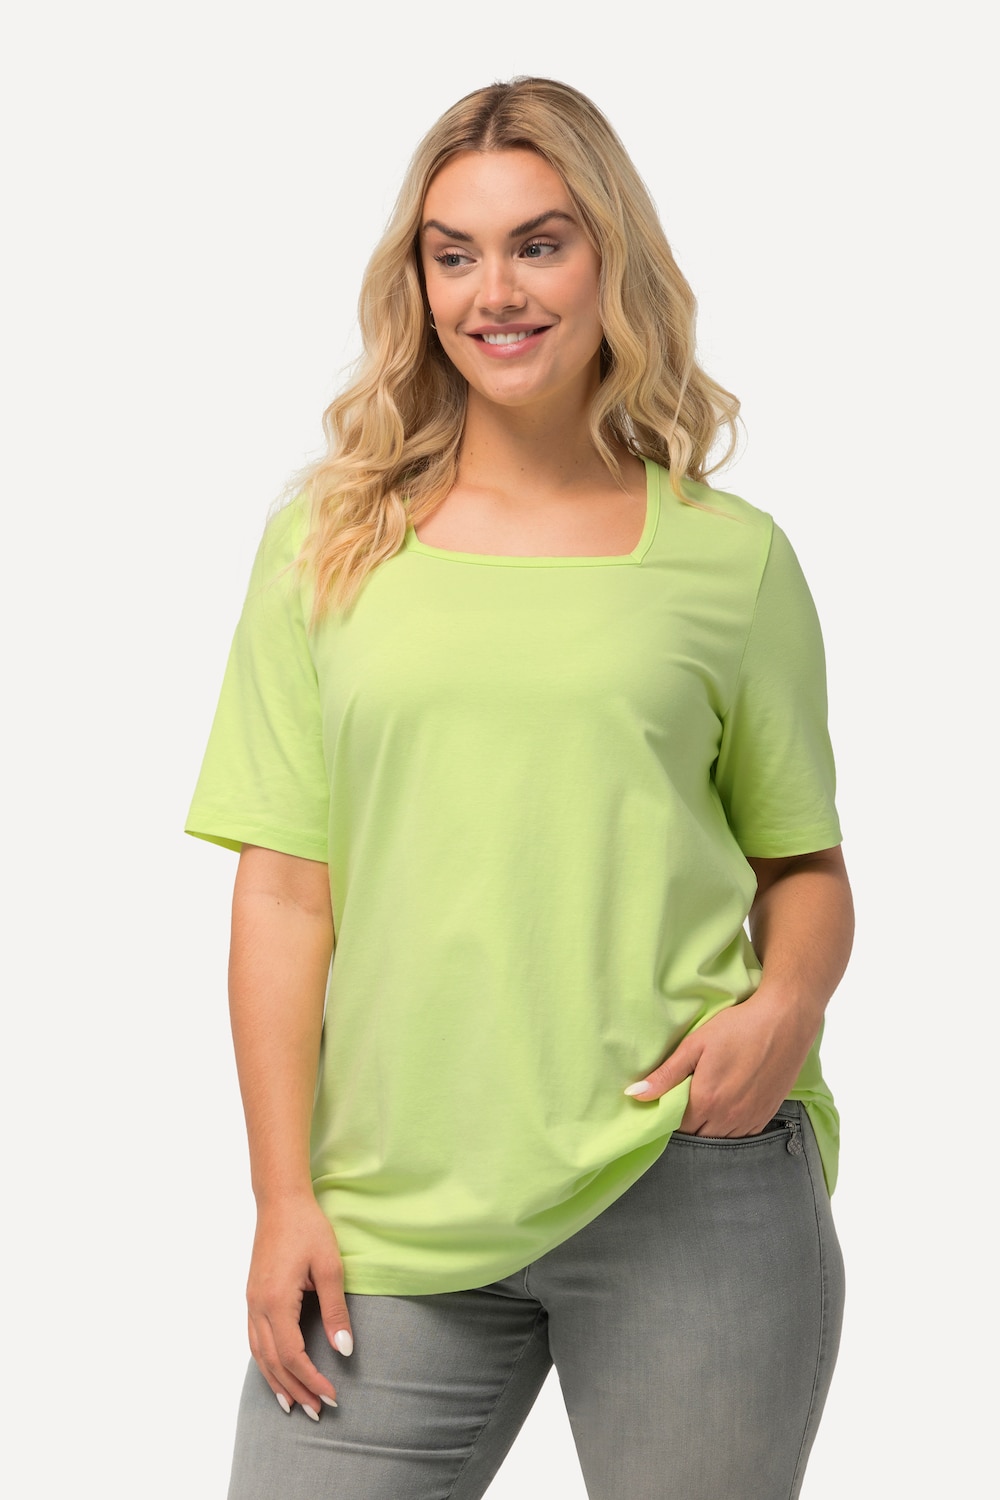 Grote Maten T-shirt, Dames, groen, Maat: 46/48, Katoen, Ulla Popken